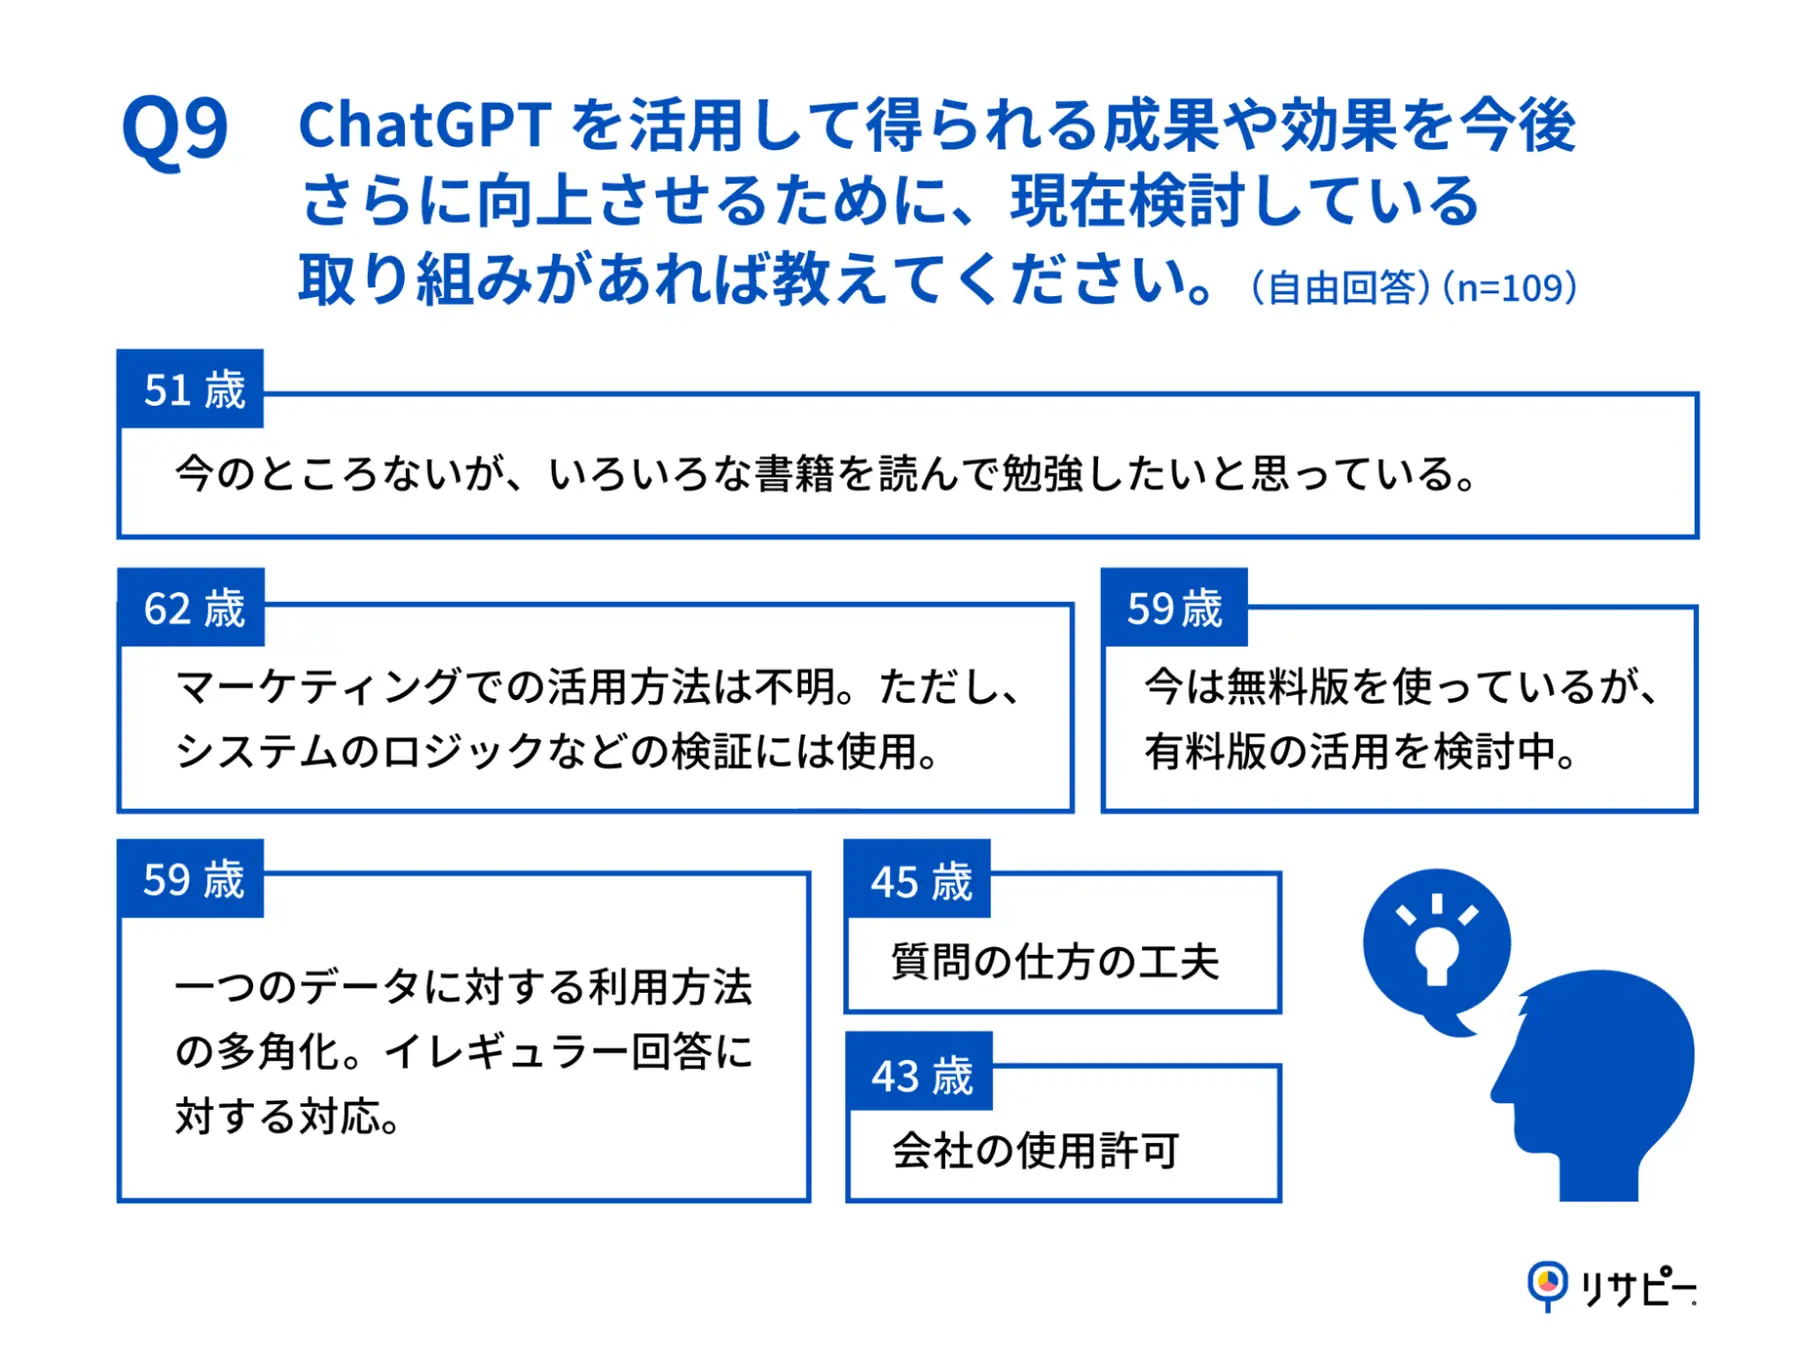 Q9.あなたが、ChatGPTを活用して得られる成果や効果を今後さらに向上させるために、現在検討している取り組みがあれば教えてください。（自由回答）